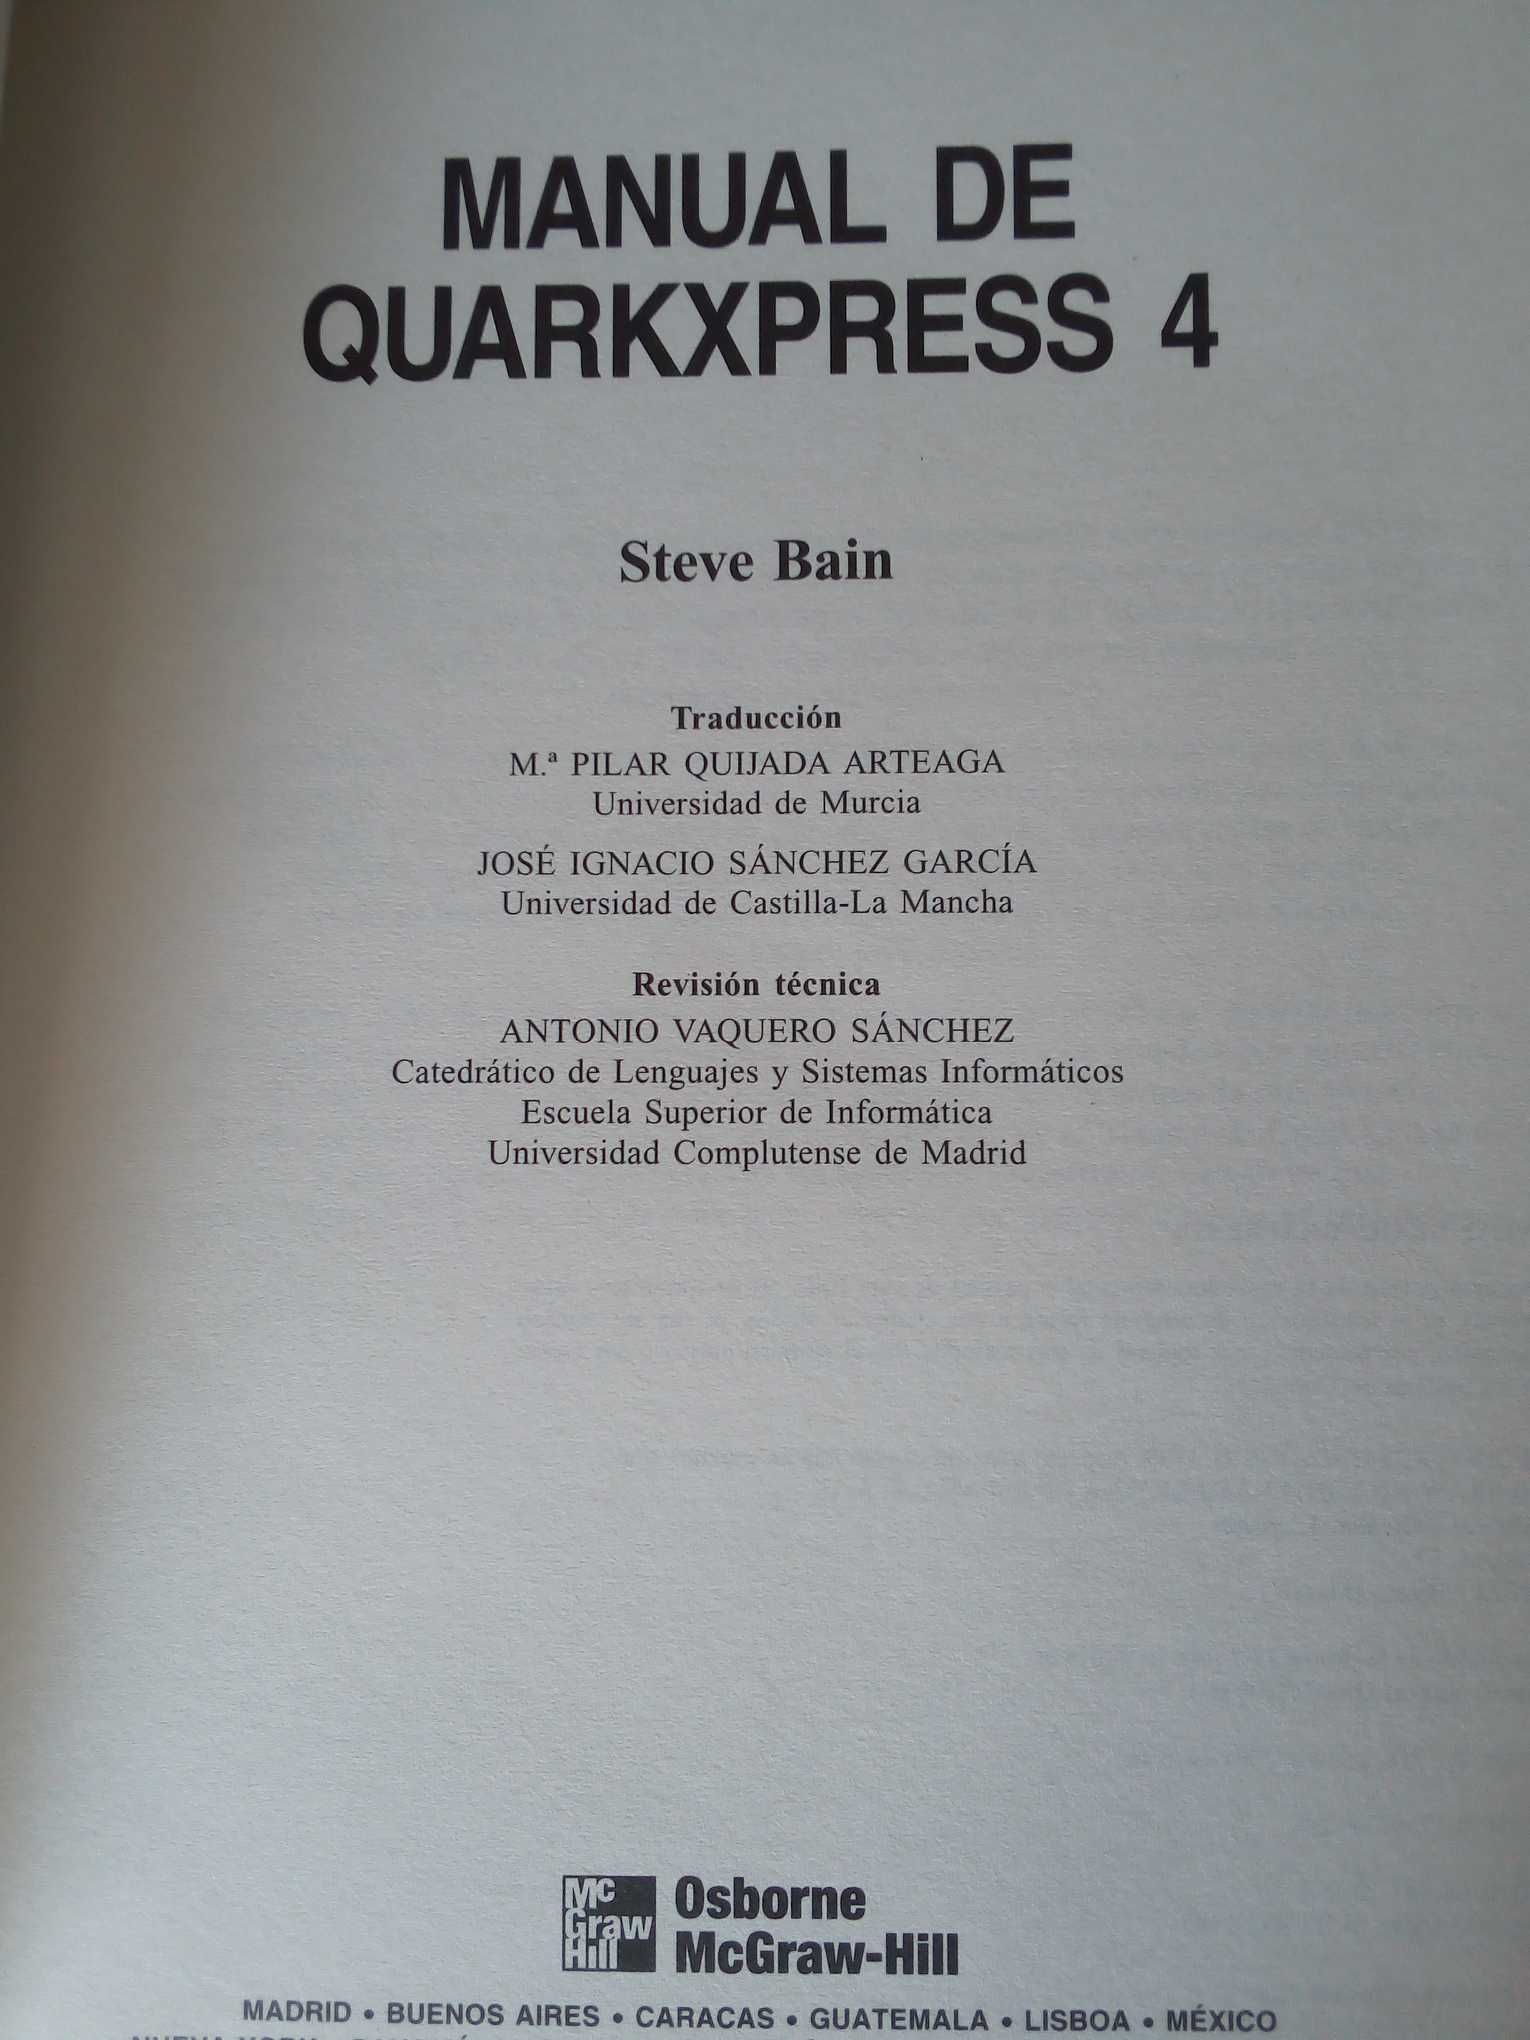 Manual de QuarkXPress 4, de Steve Bain